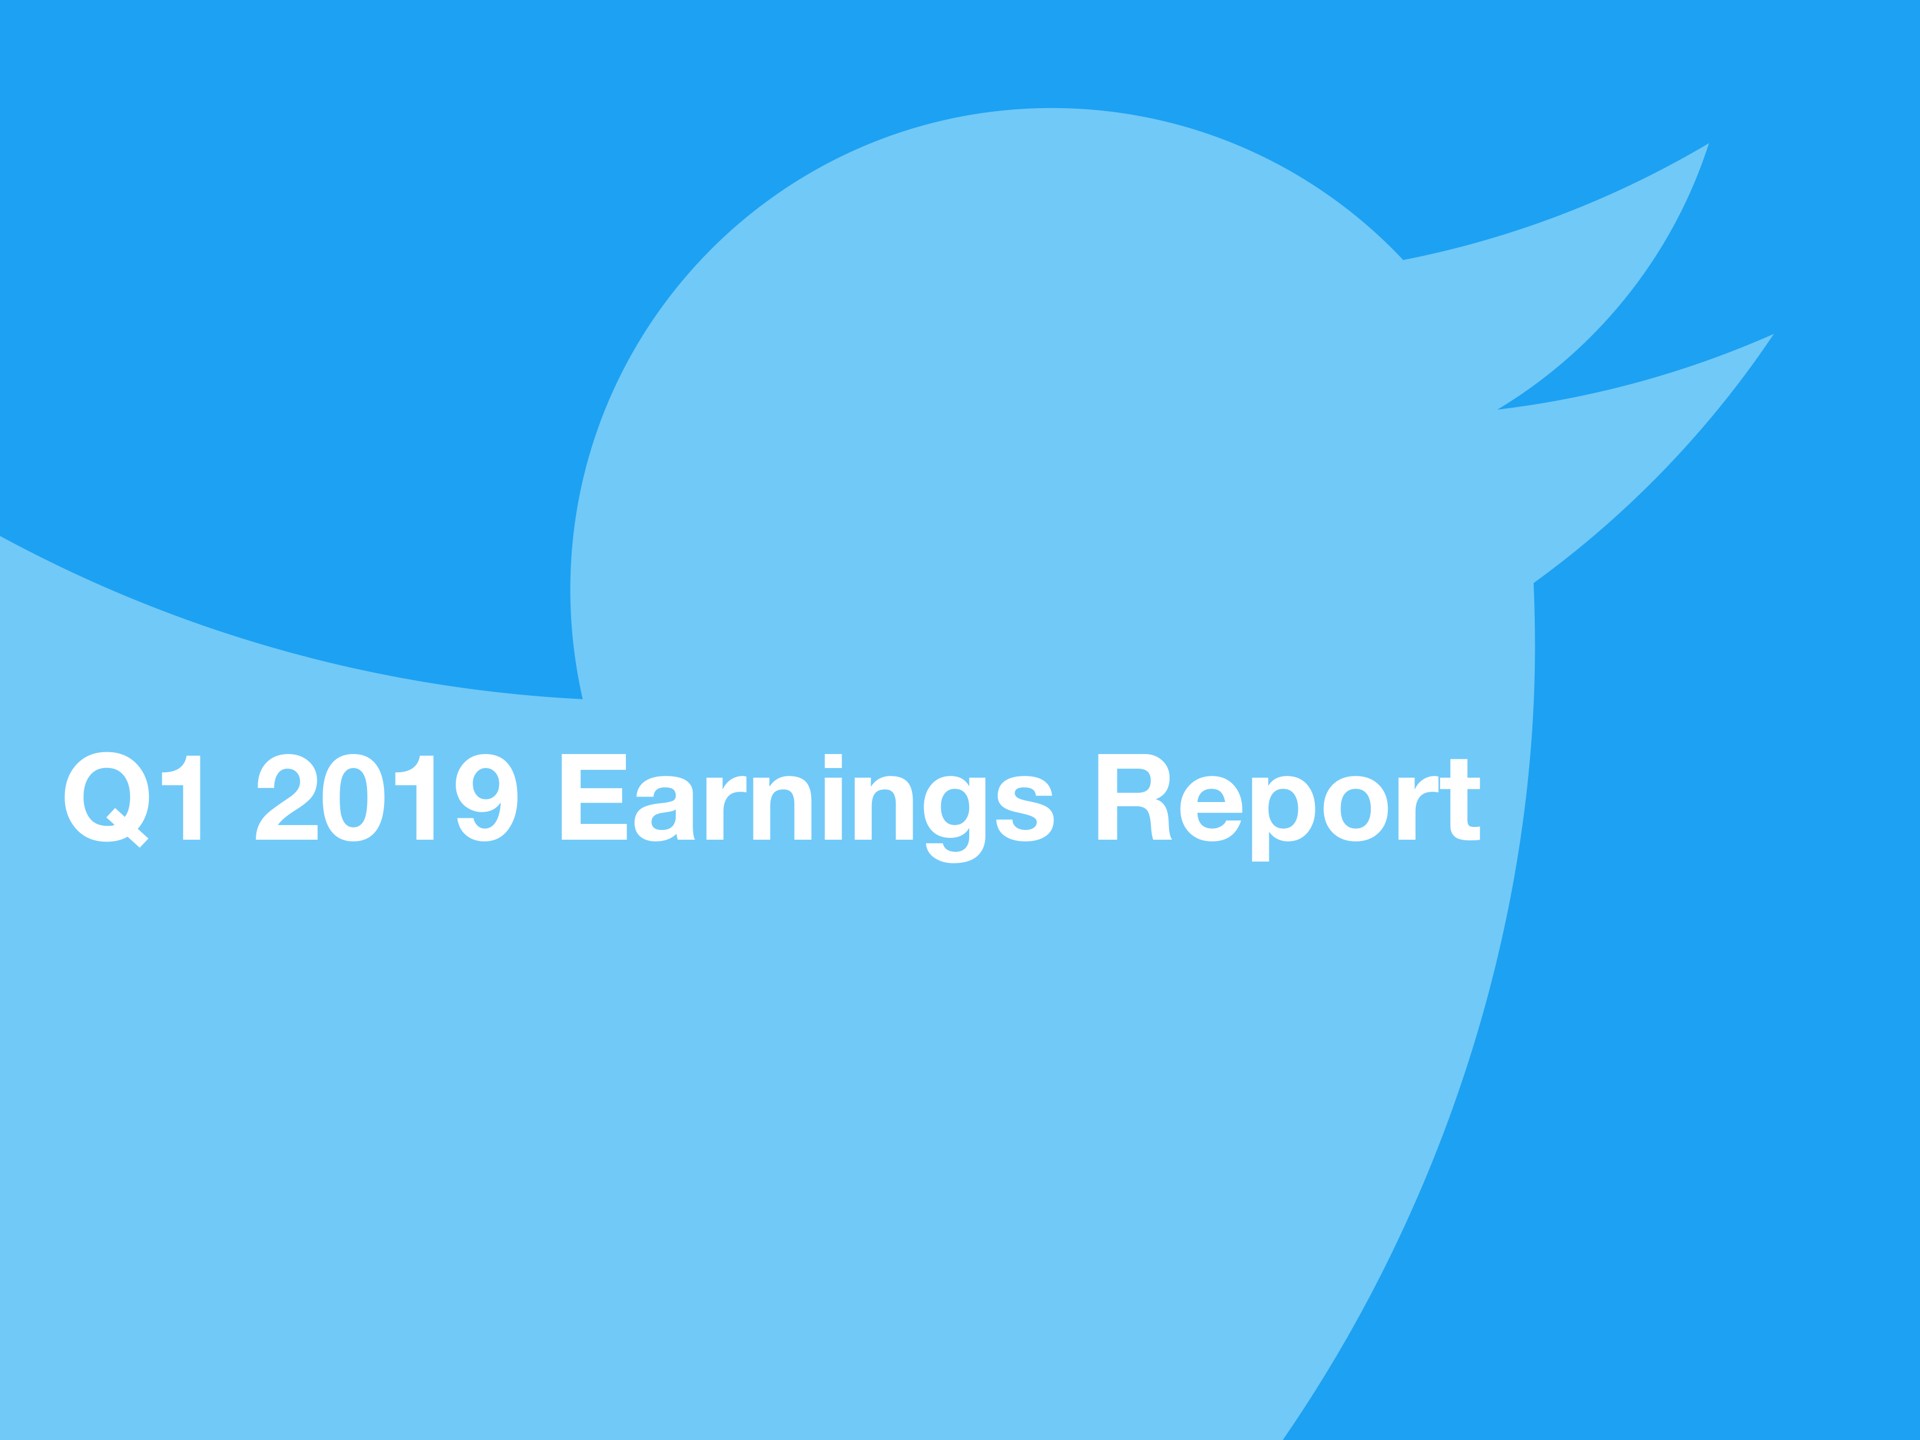 earnings report | Twitter